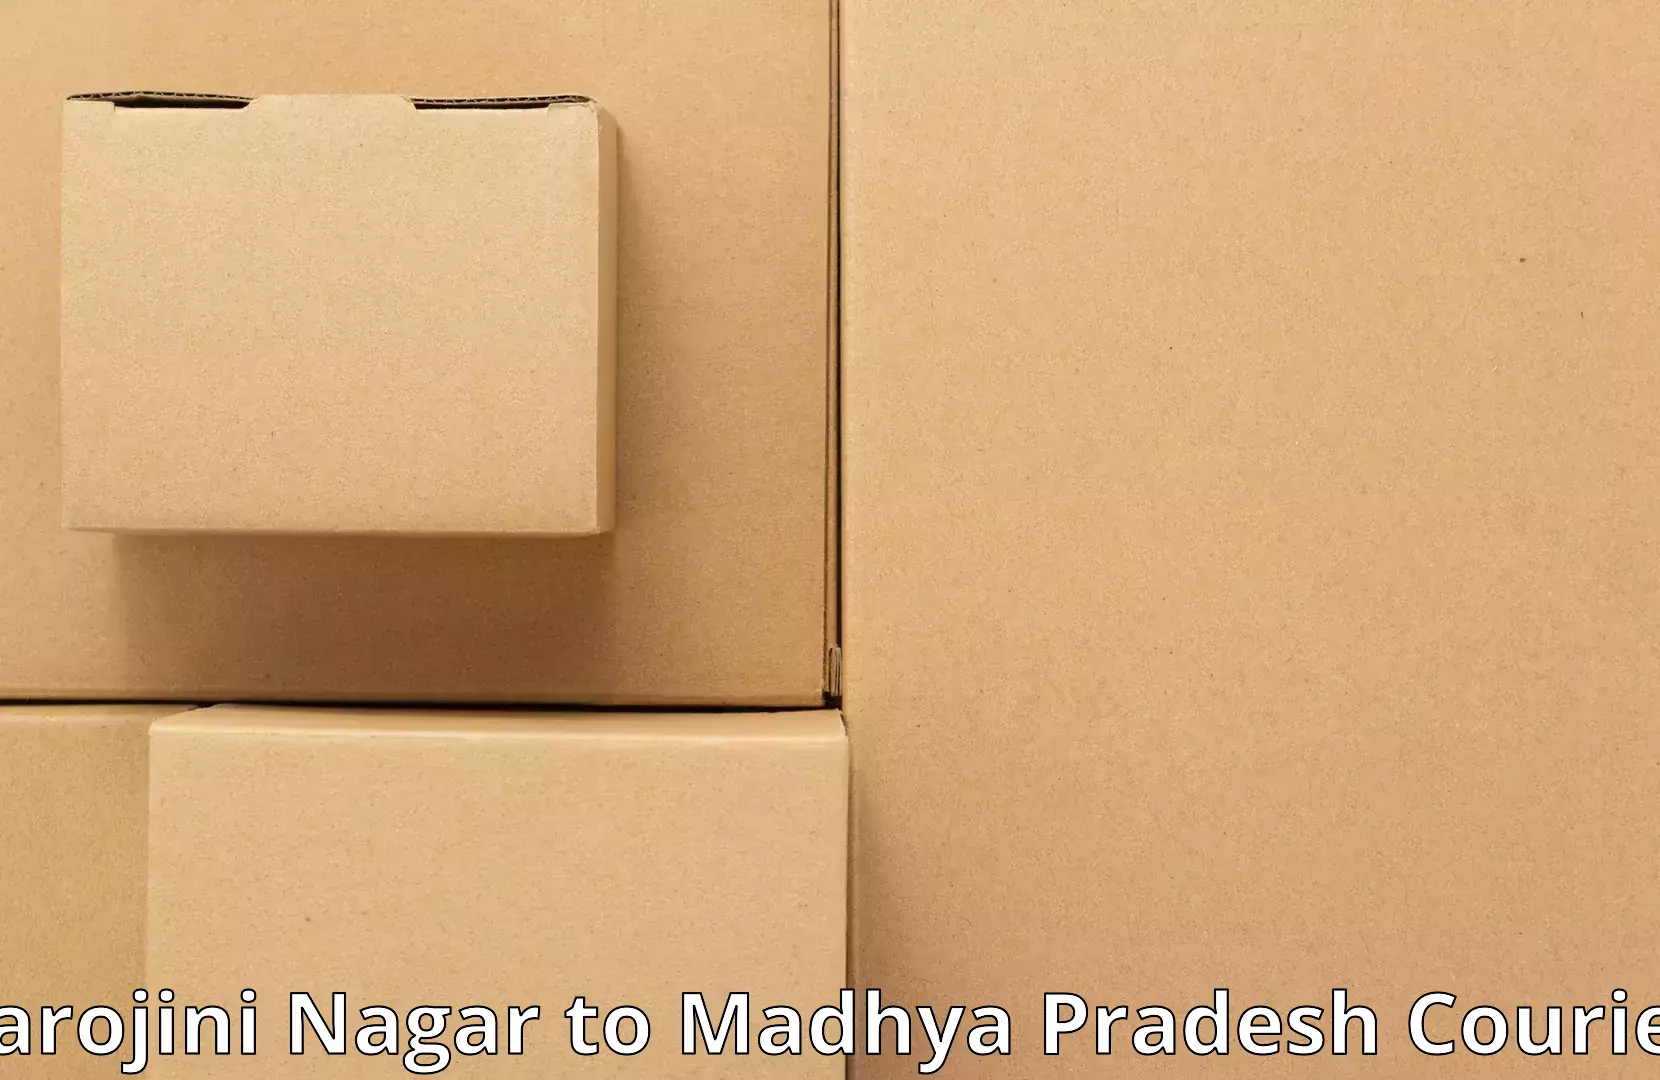 Reliable movers Sarojini Nagar to Pandhurna